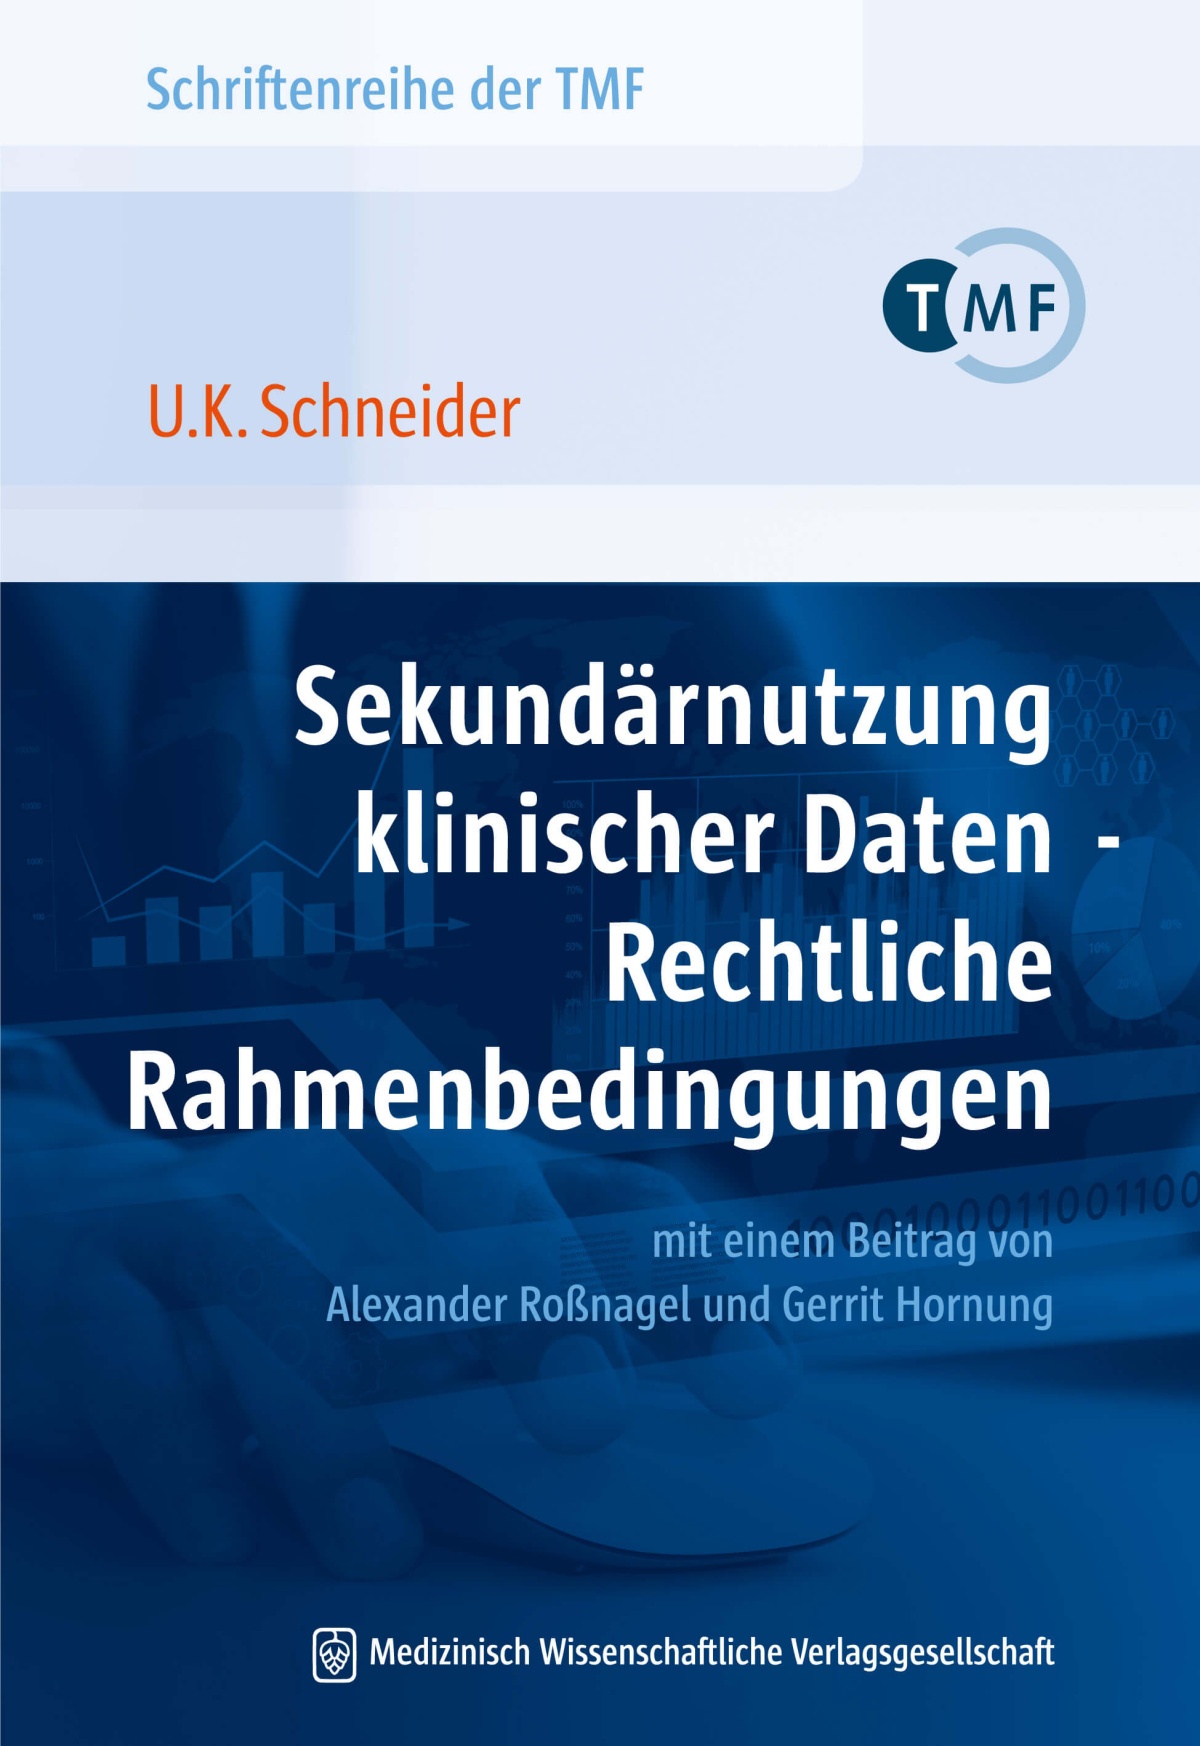 Cover des TMF-Rechtsgutachtens zur Sekundärnutzung klinischer Daten